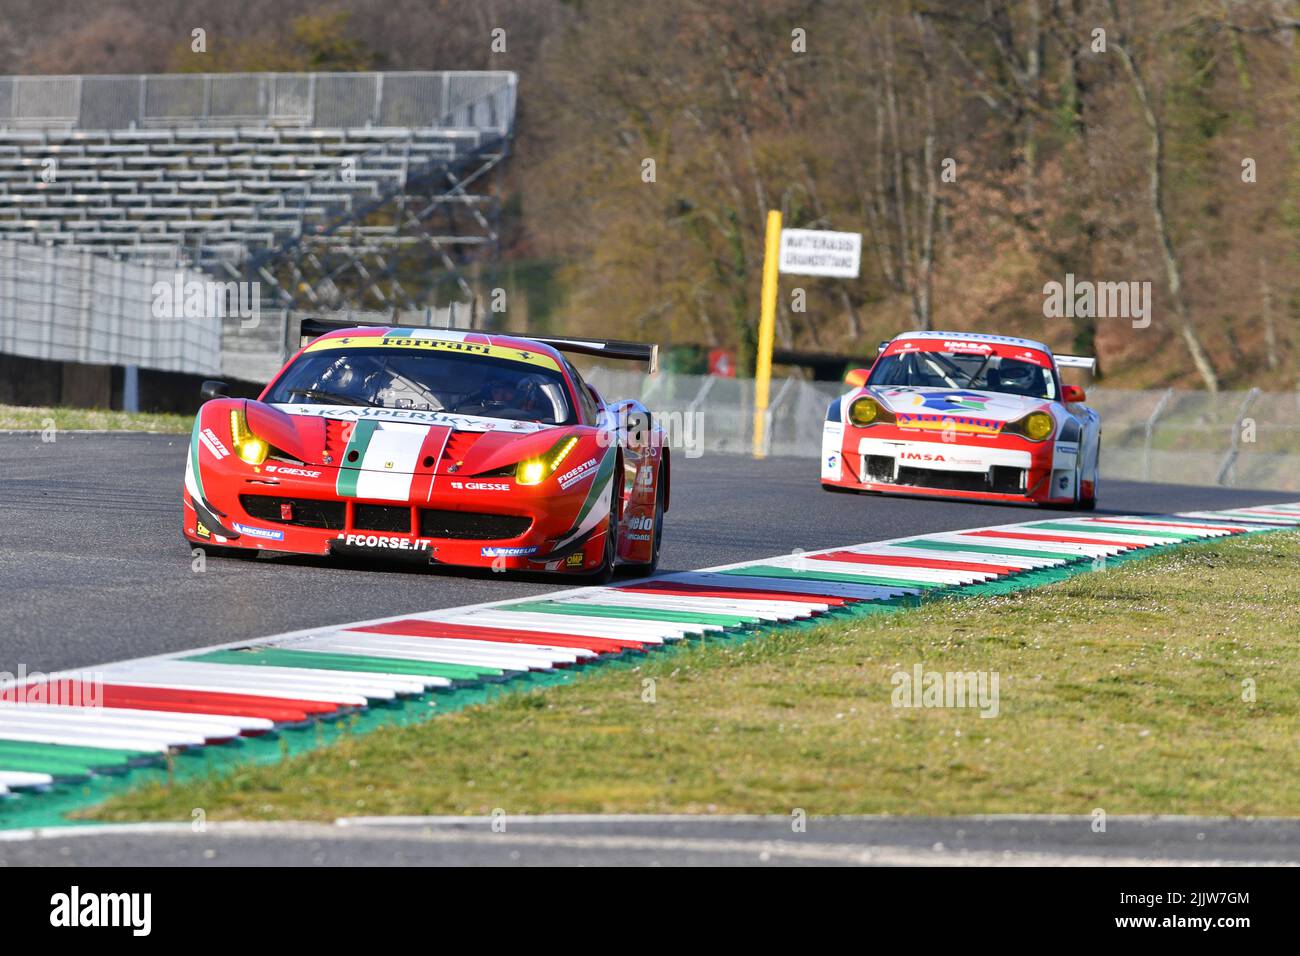 Scarperia, 3 April 2022: Ferrari 458 GTE 2011 in action during Mugello Classic 2022 at Mugello Circuit in Italy. Stock Photo